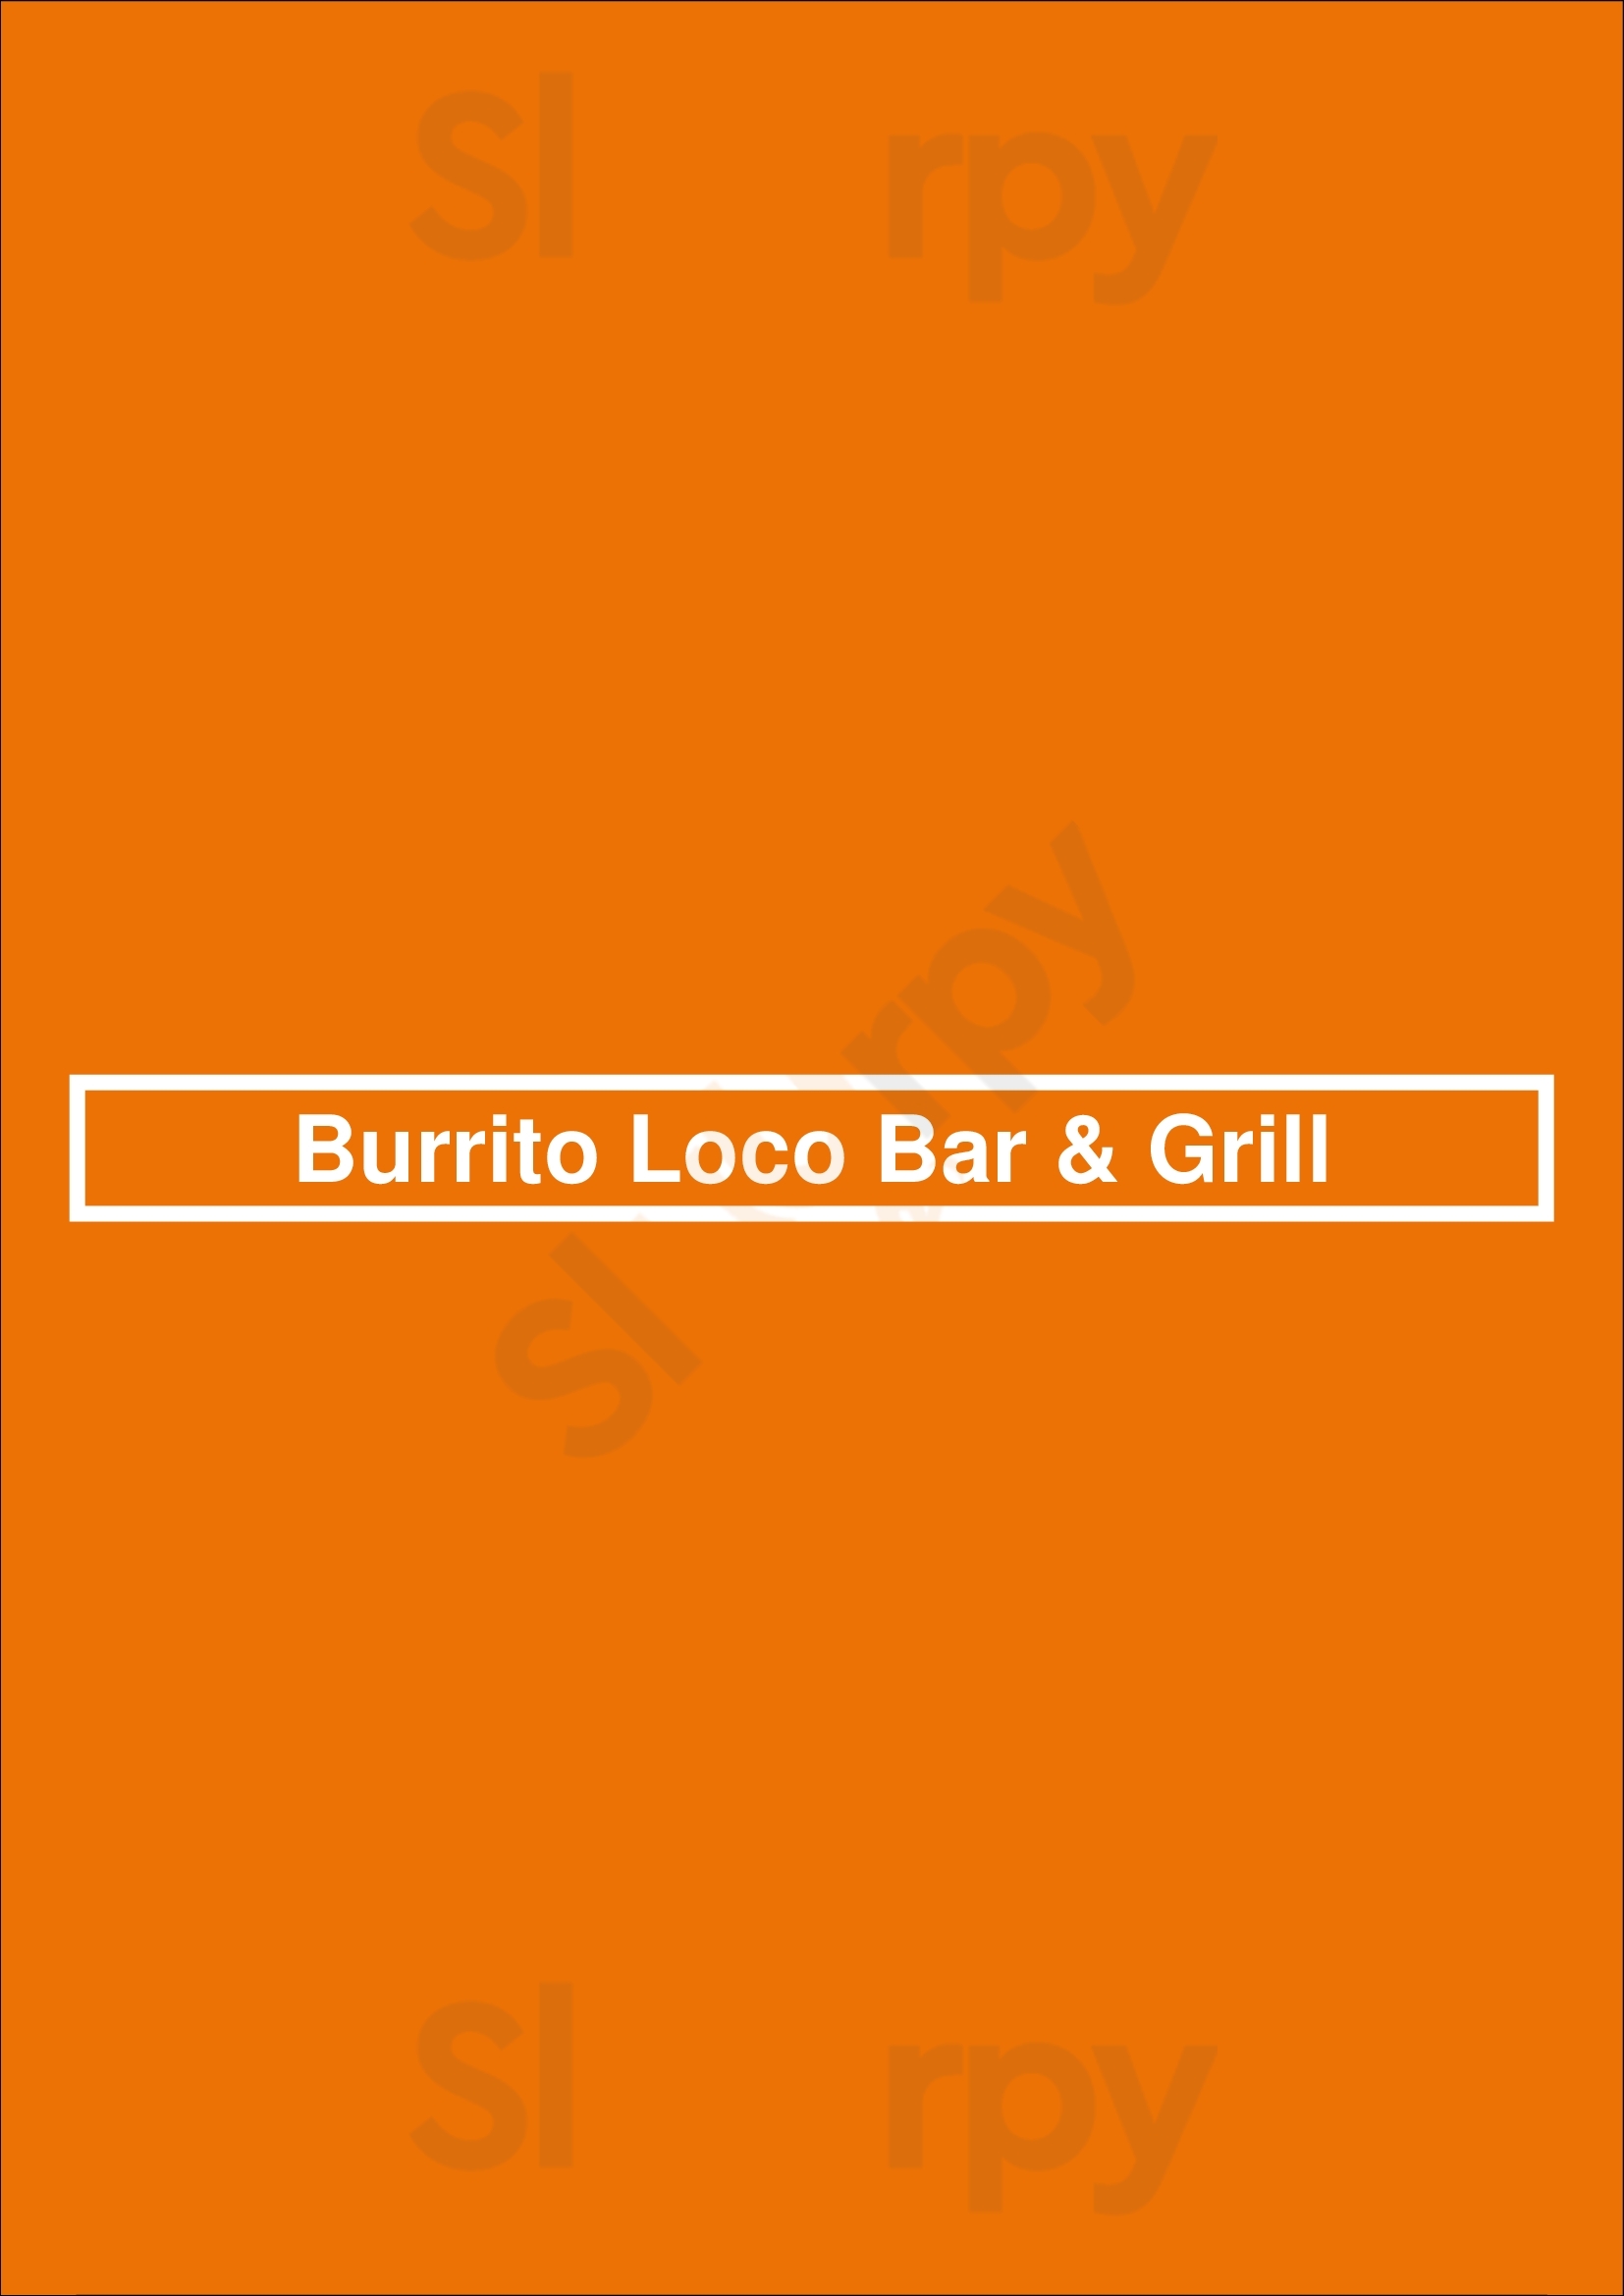 Burrito Loco Bar & Grill Minneapolis Menu - 1